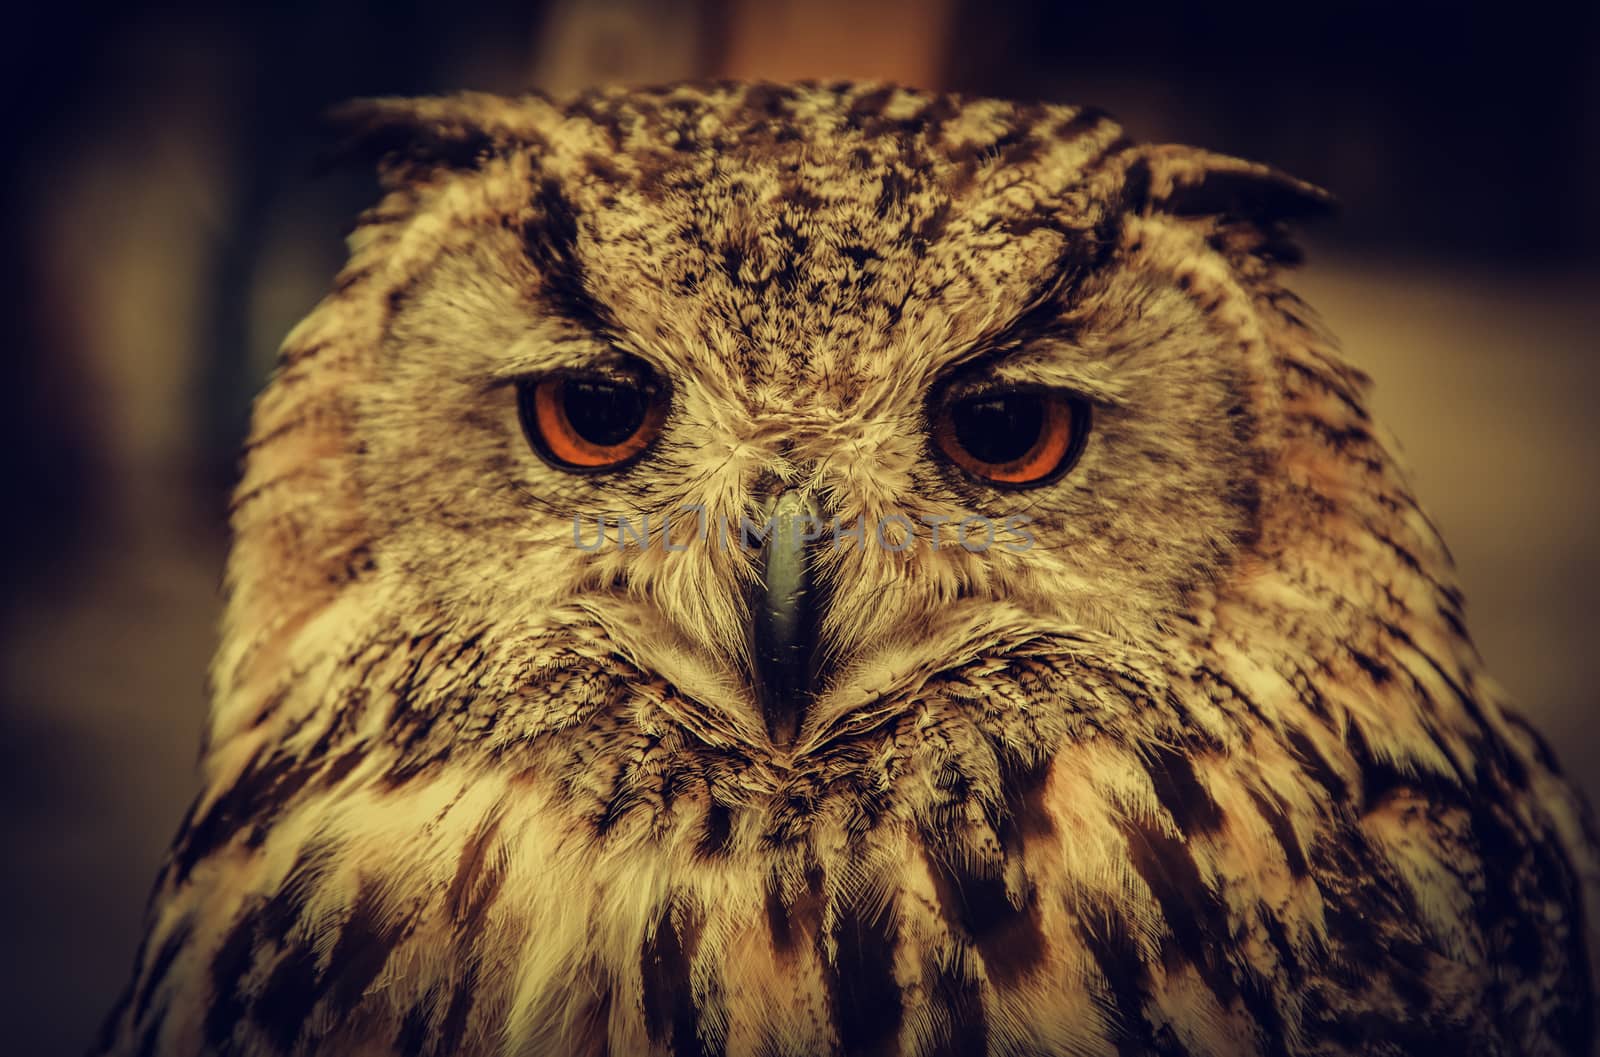 Royal Owl by esebene